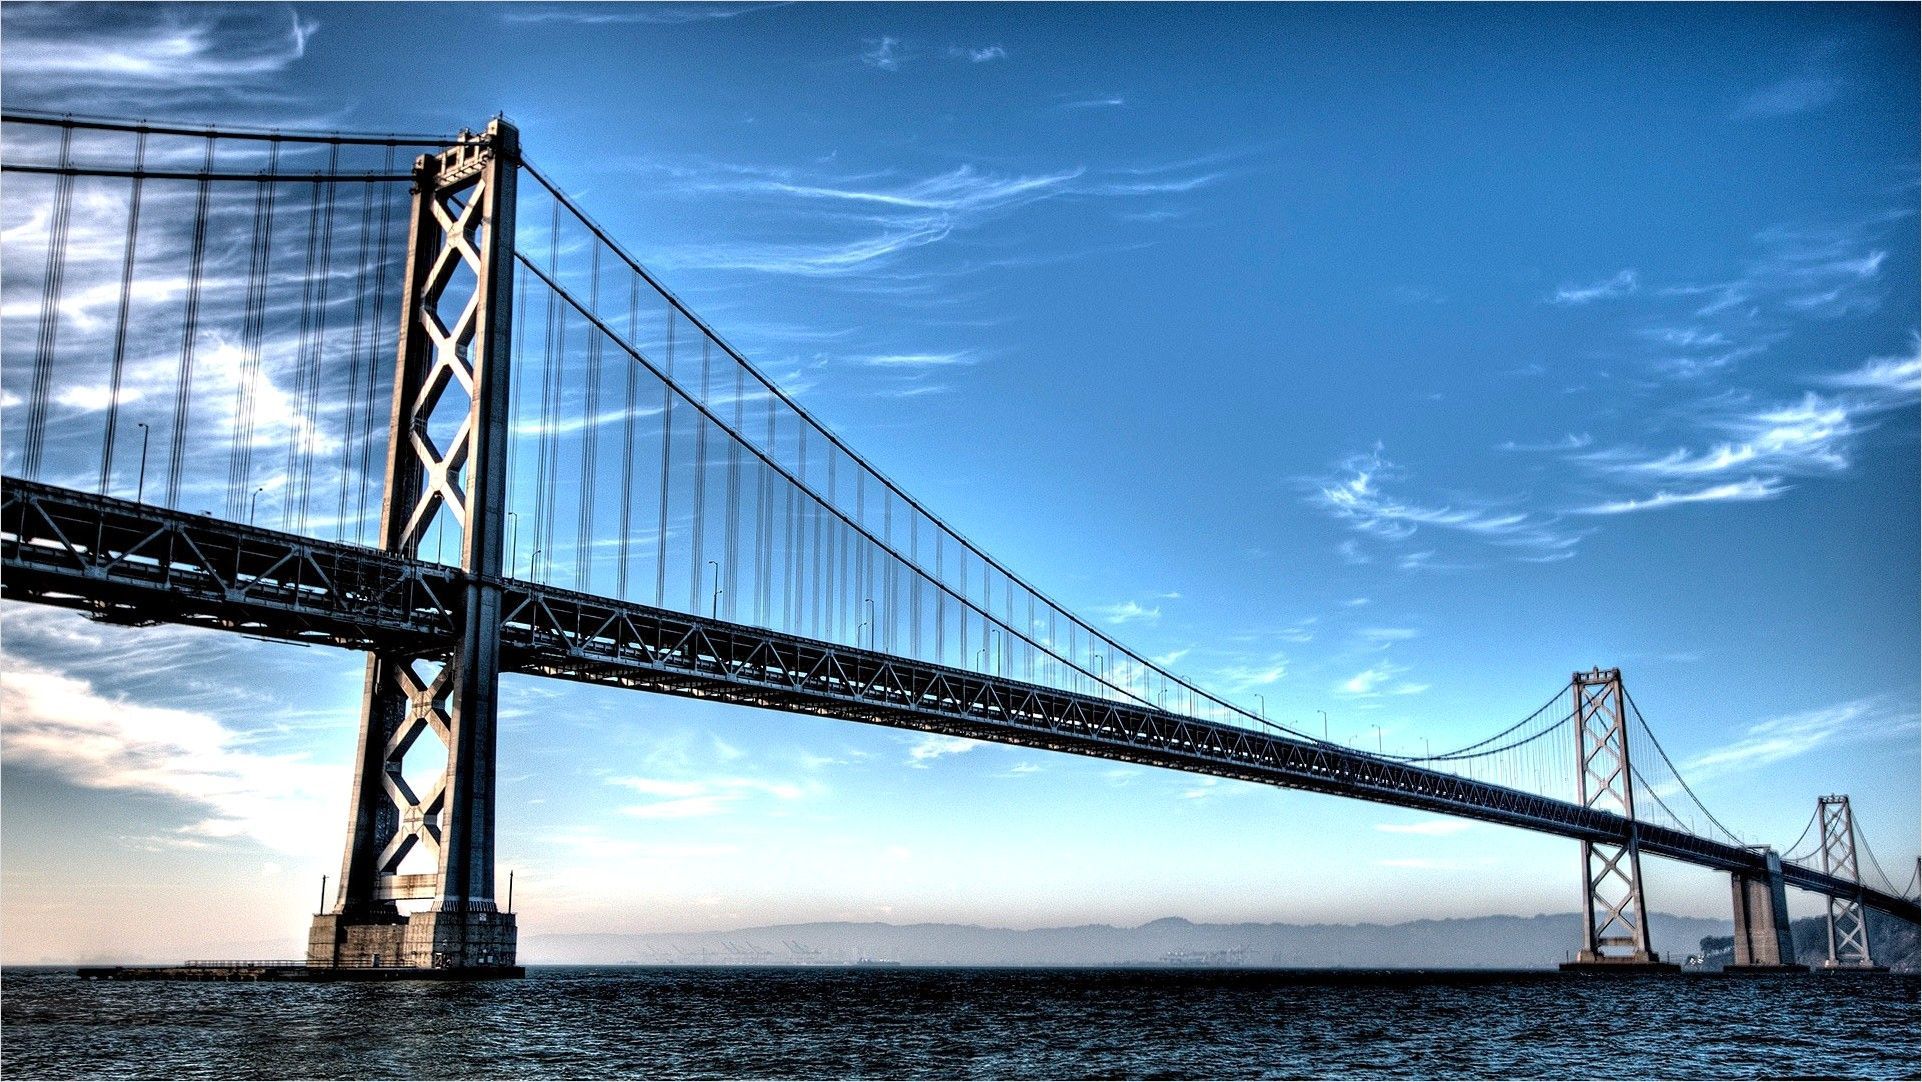 4k Structural Engineering Wallpaper. Bridge wallpaper, San francisco bridge, Bay bridge san francisco